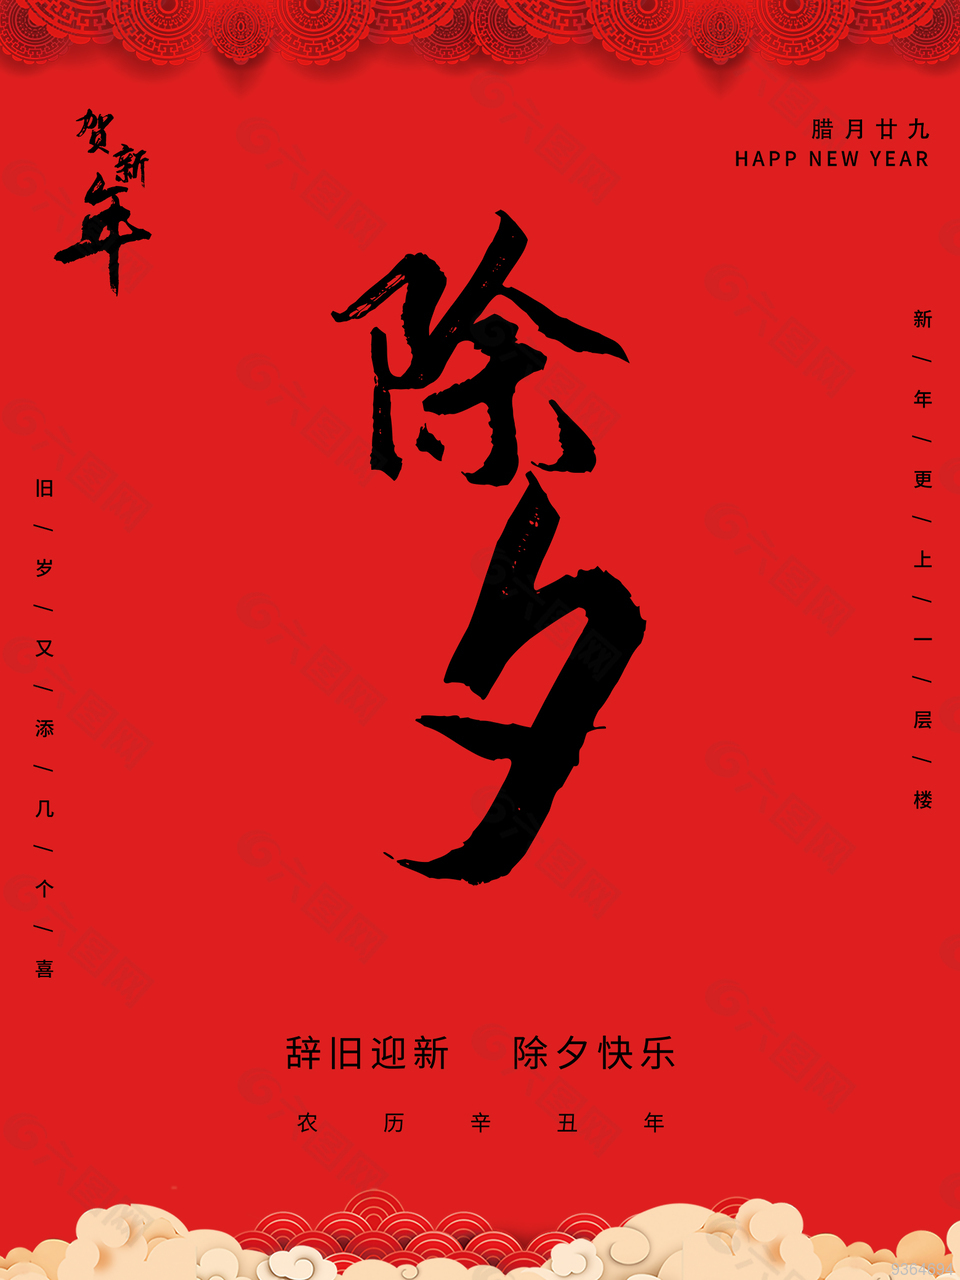 贺新年节日宣传海报